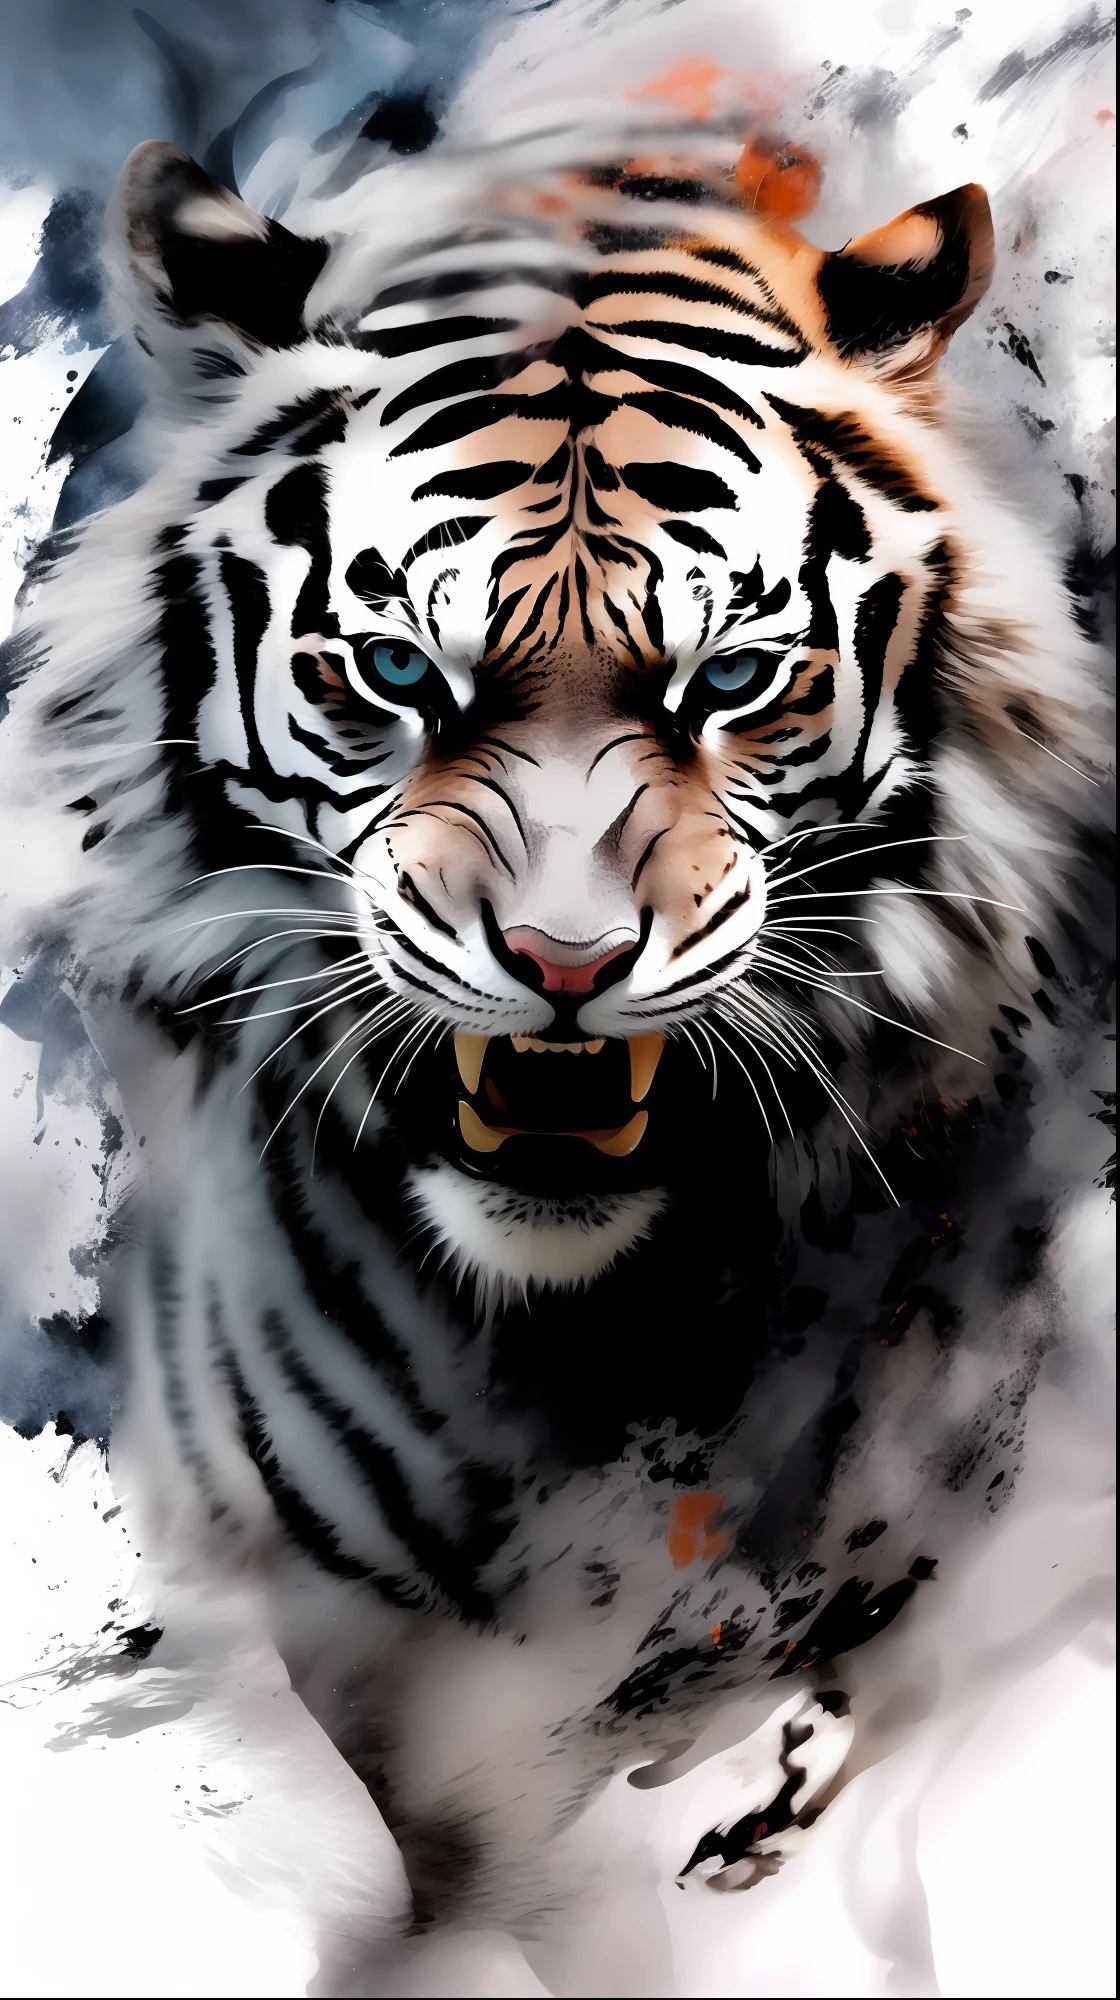 顔に白と黒の縞模様がある虎の絵 - SeaArt AI